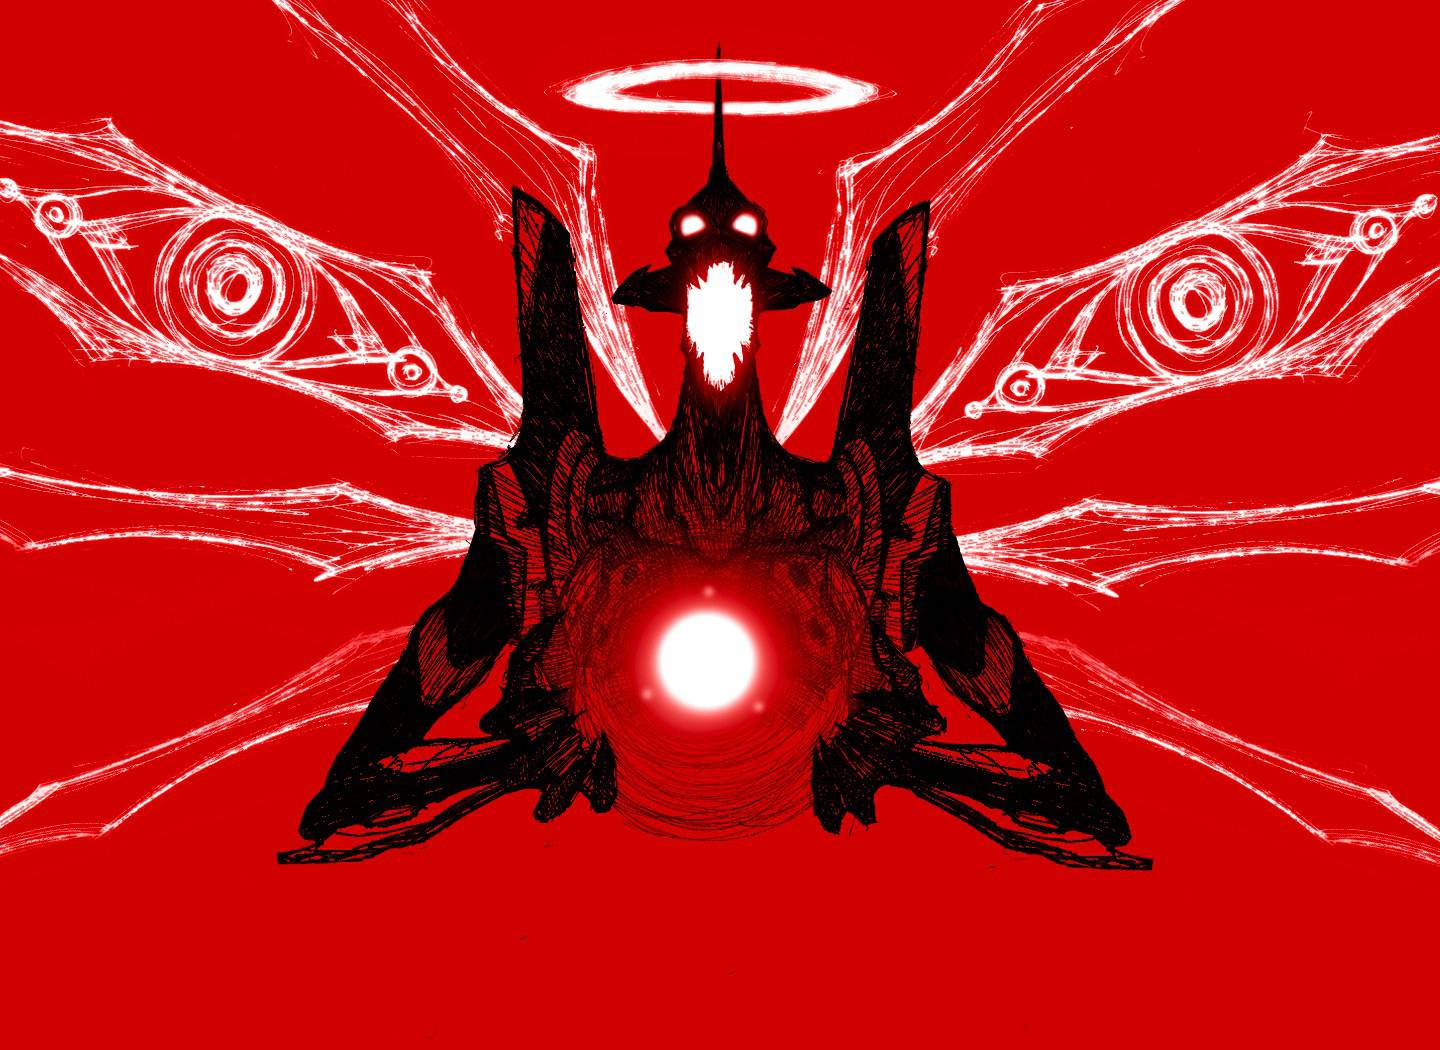 Berserk Unit-01 Neon Genesis Evangelion Red Wallpaper